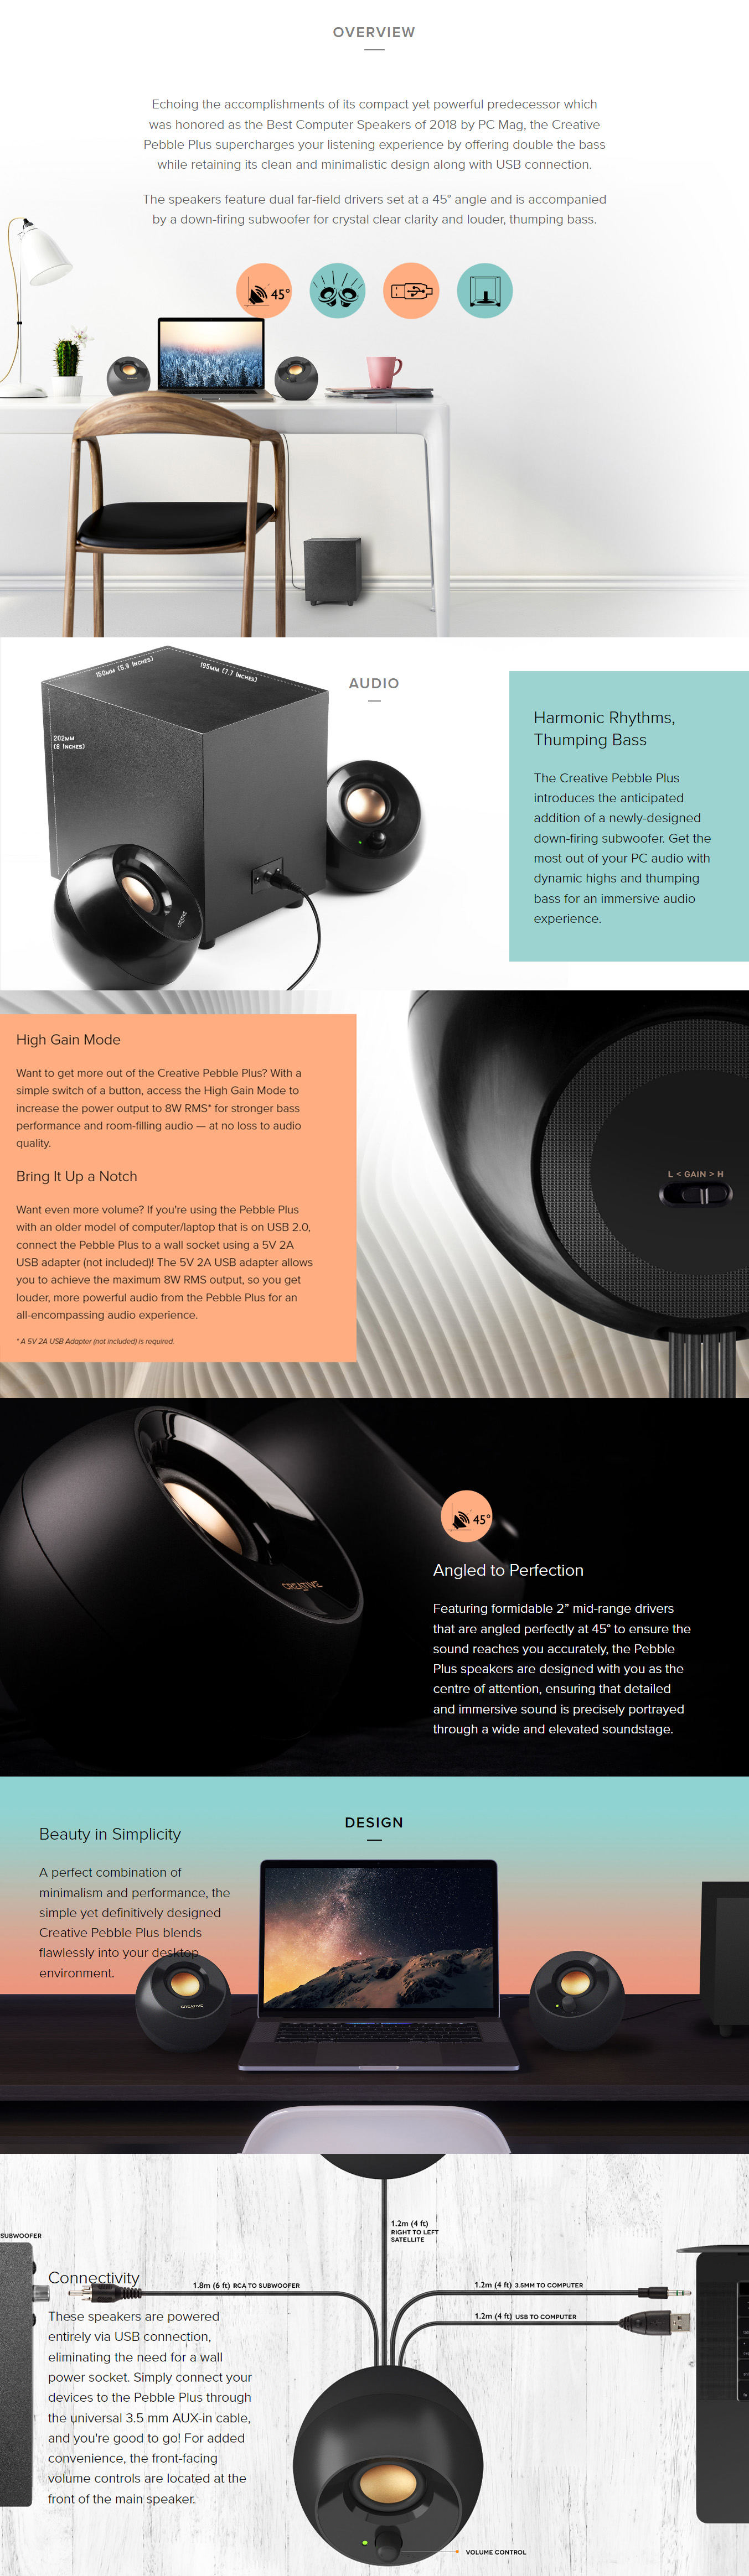 Speakers-Creative-Pebble-PLUS-2-1-USB-Speaker-Black-1